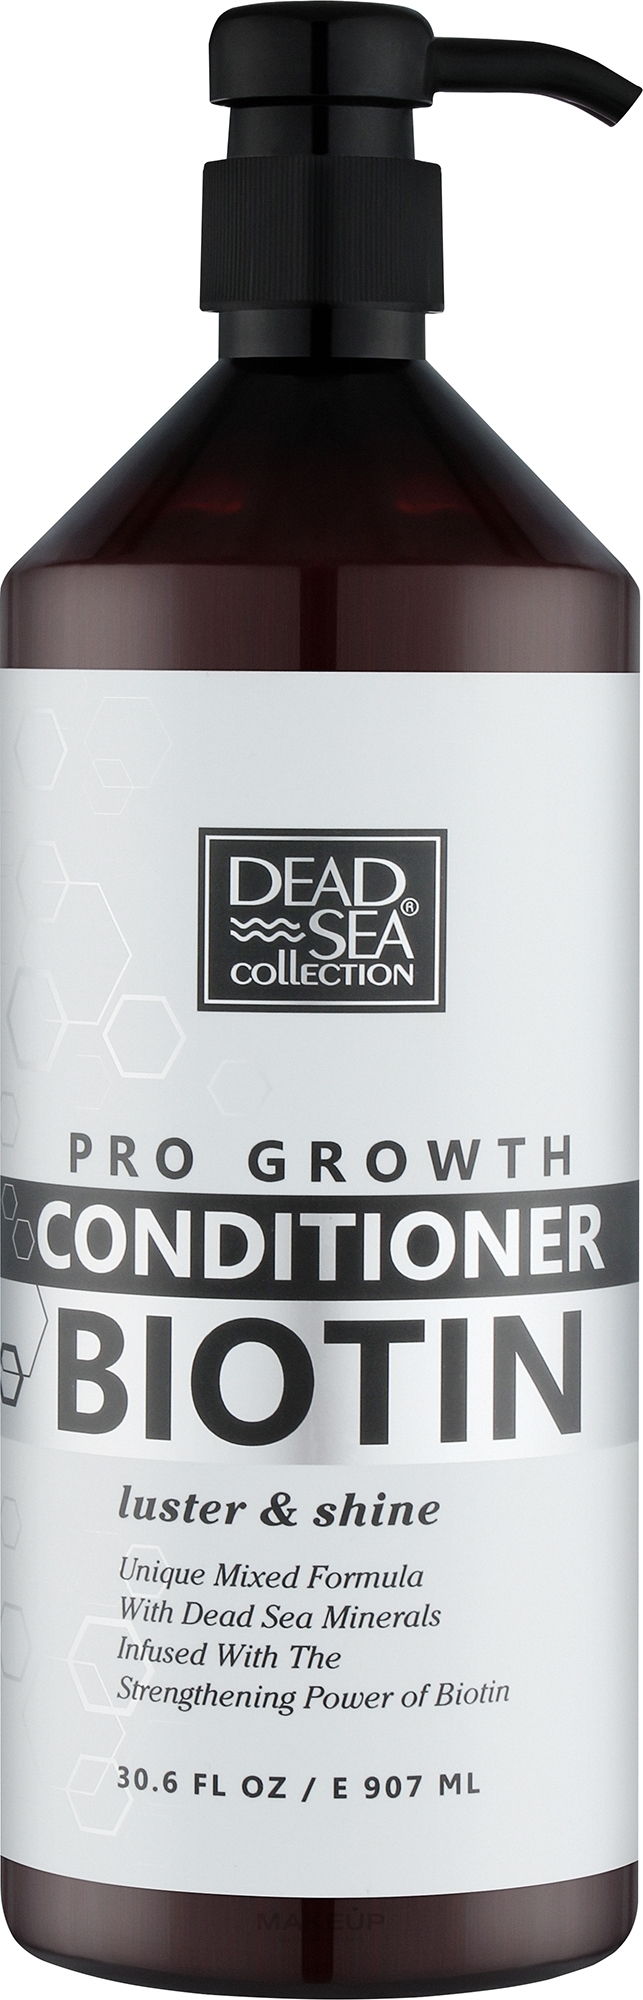 Кондиціонер для волосся з біотином та мінералами Мертвого моря - Dead Sea Collection Biotin Conditioner — фото 907ml